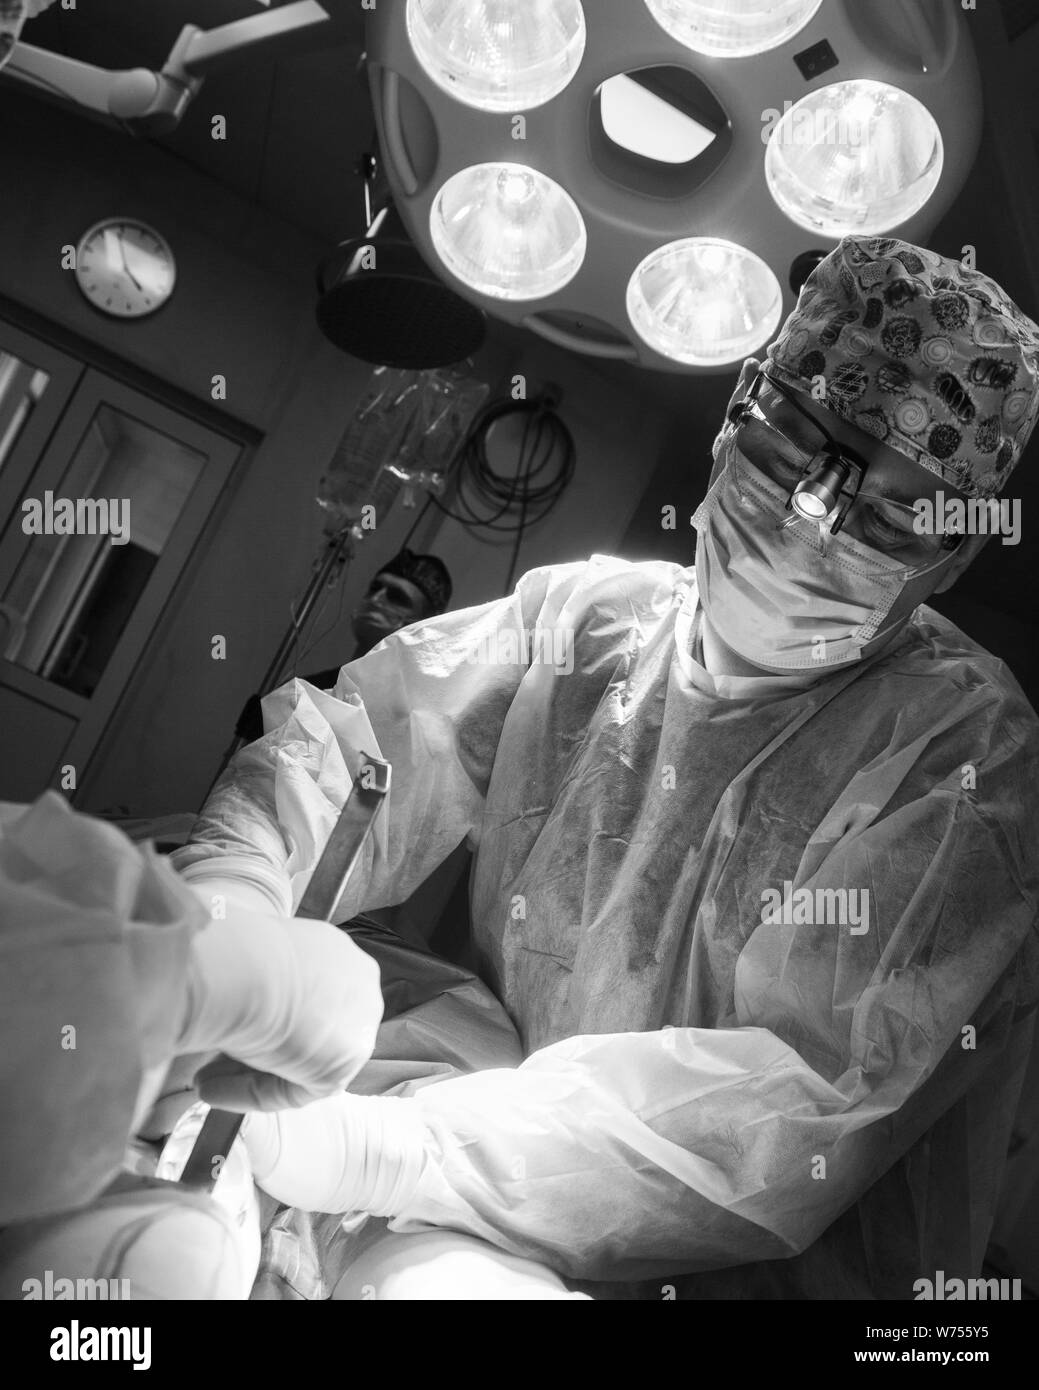 Une photo en noir et blanc du chirurgien d'exploitation dans la salle d'opération. Masque de chirurgien en chirurgie et uniforme et à côté de la lumière Banque D'Images